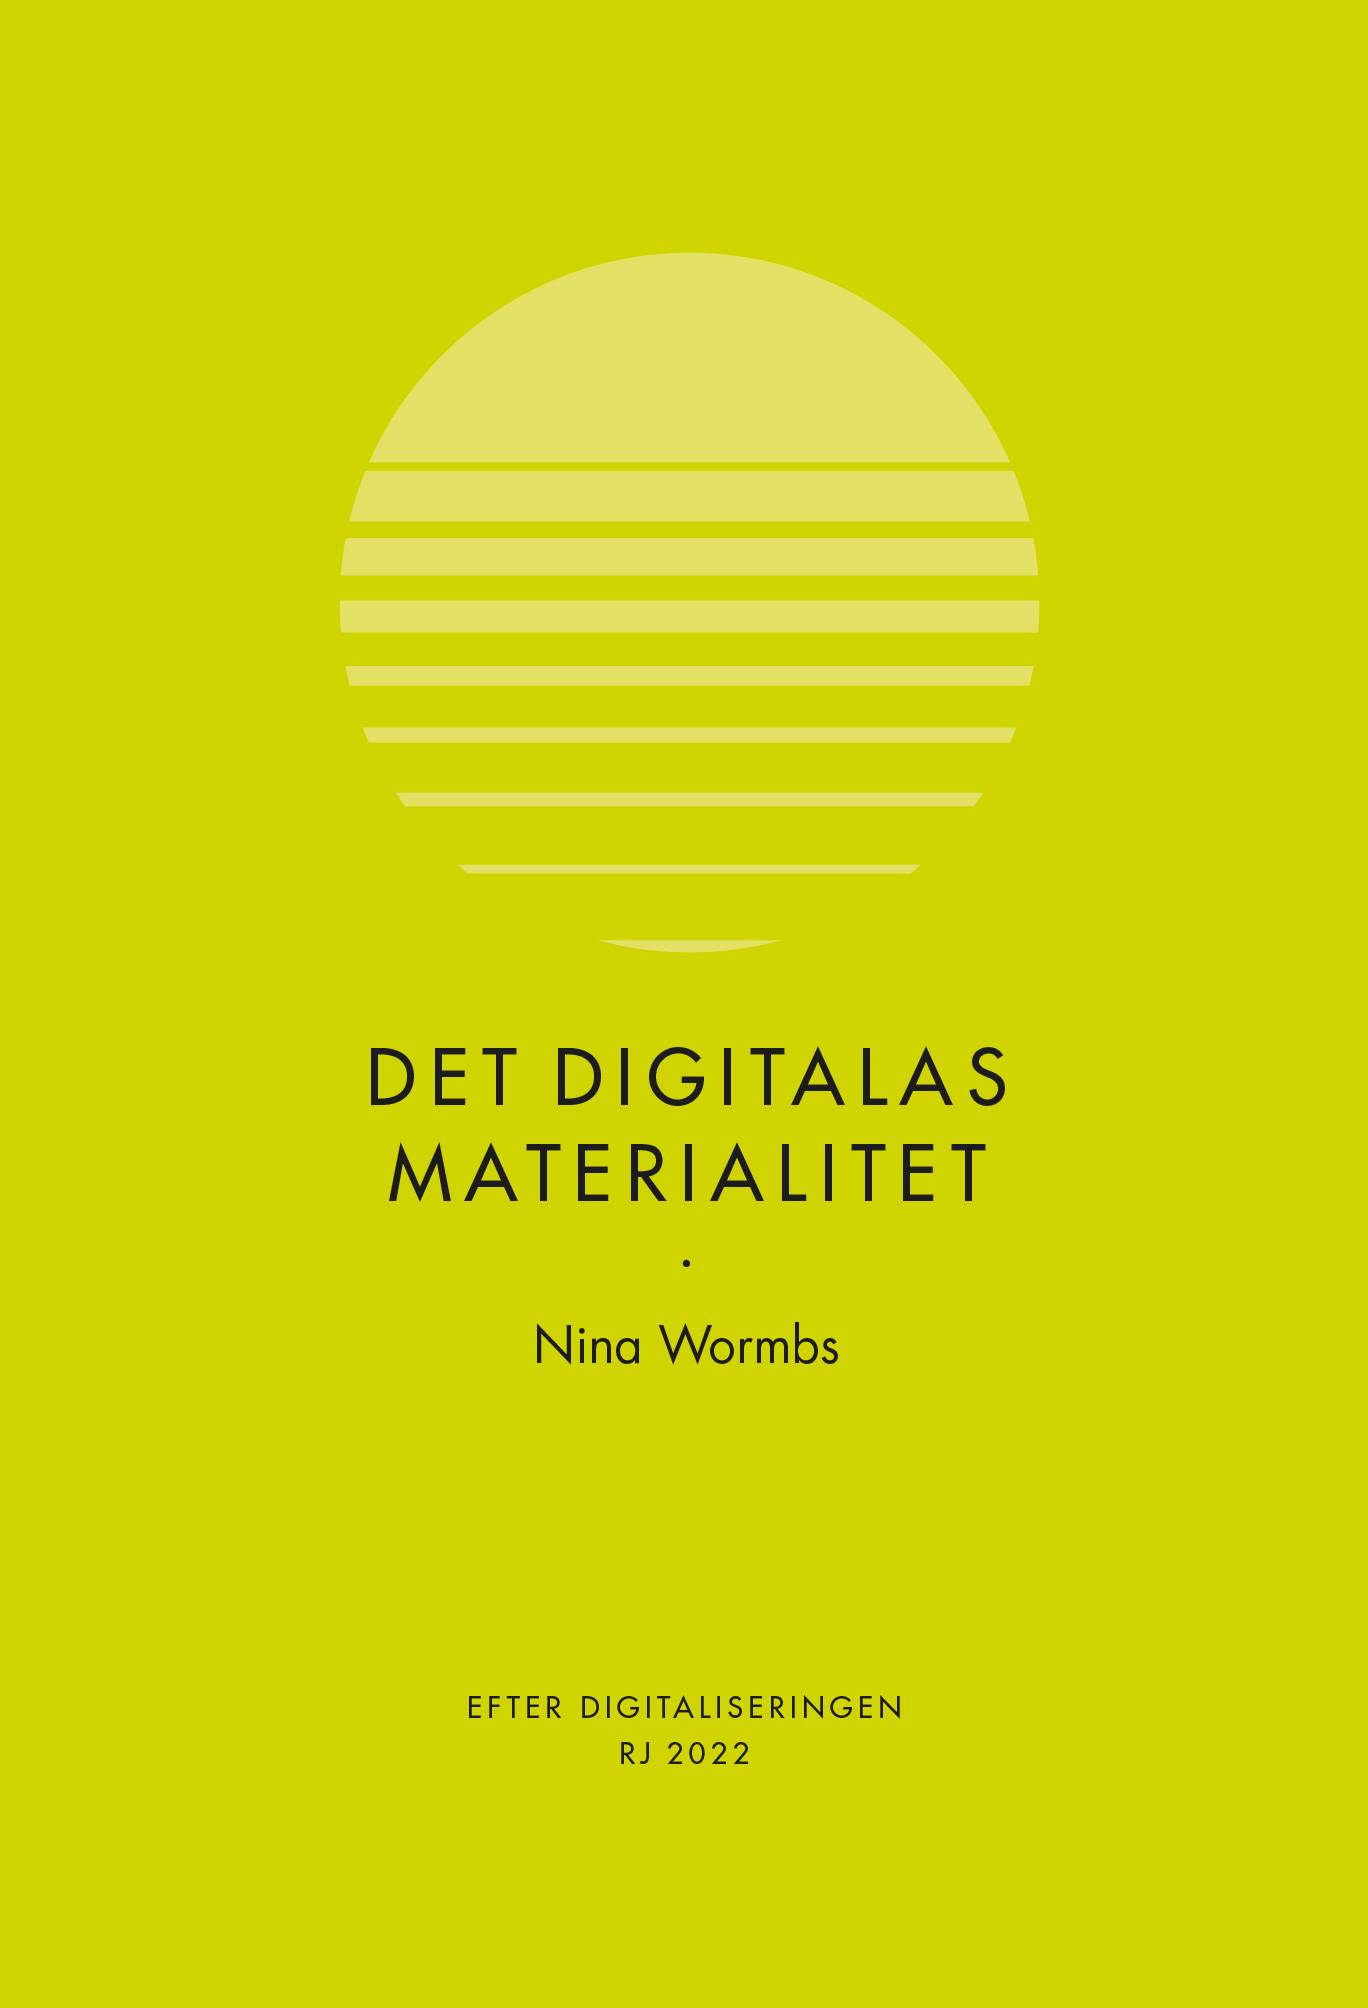 Det digitalas materialitet (RJ 2022: Efter digitaliseringen)